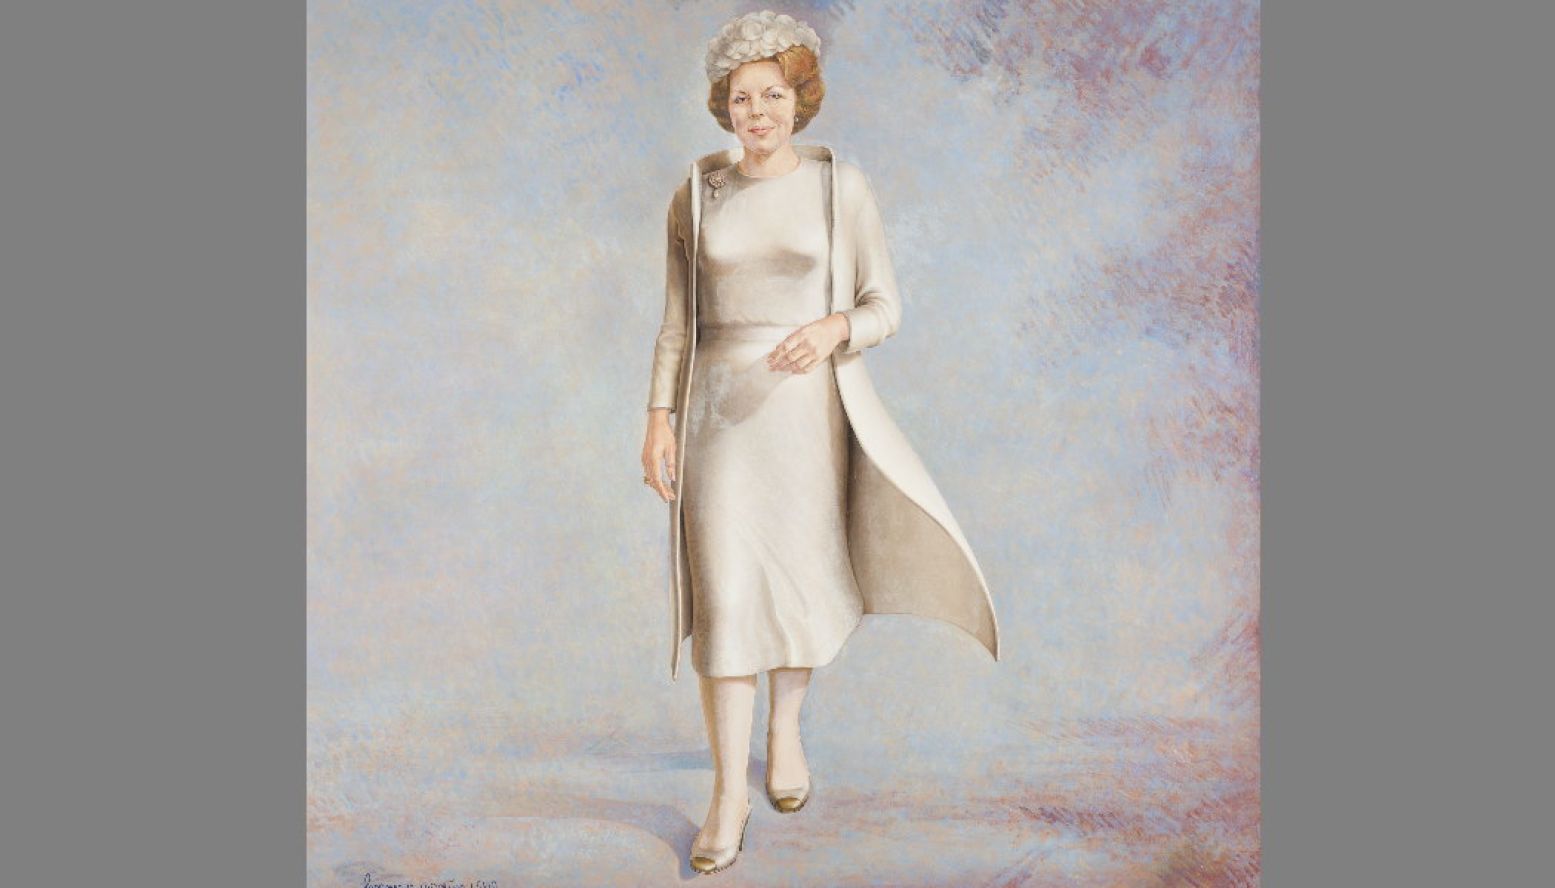 Herman Gordijn, Beatrix, Koningin der Nederlanden (1982), olieverf op doek. Foto: Collectie Rijksdienst voor het Cultureel Erfgoed.